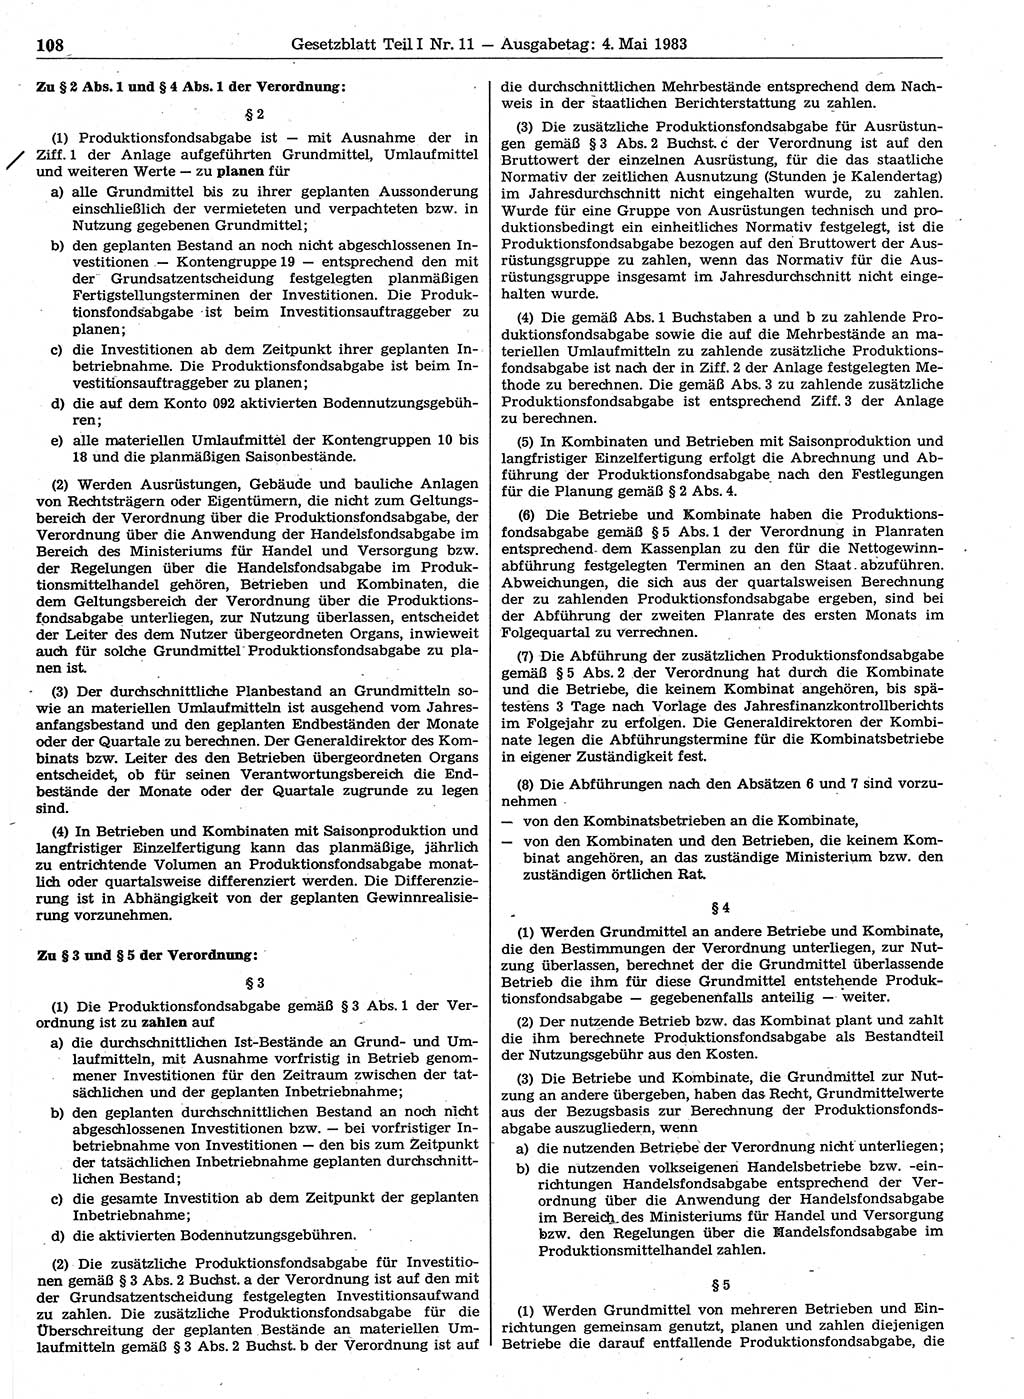 Gesetzblatt (GBl.) der Deutschen Demokratischen Republik (DDR) Teil Ⅰ 1983, Seite 108 (GBl. DDR Ⅰ 1983, S. 108)